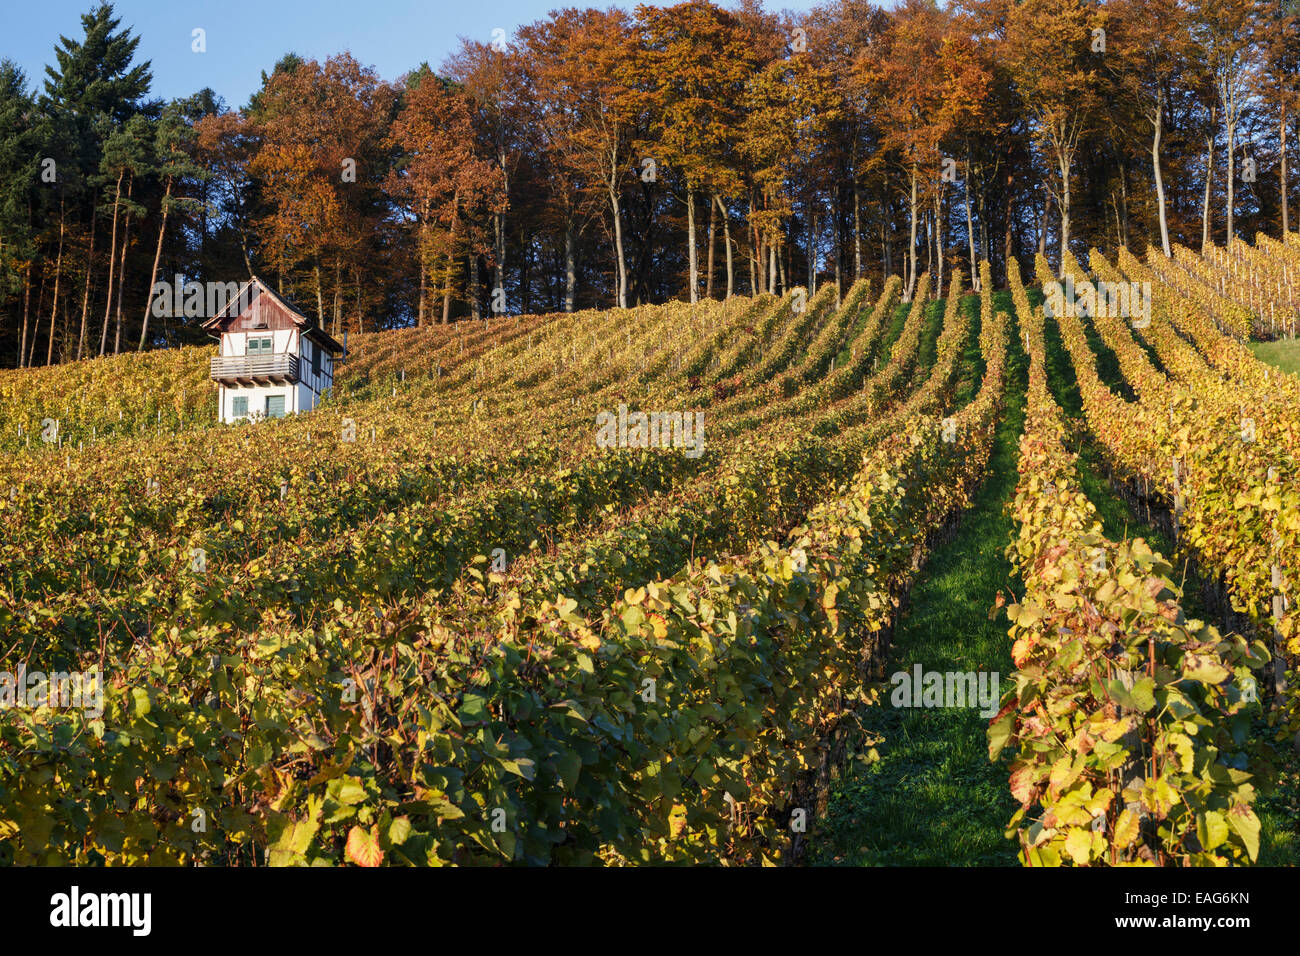 Vineyard in autumn, Rudolfingen, Weinland, Canton of Zürich, Switzerland. Stock Photo